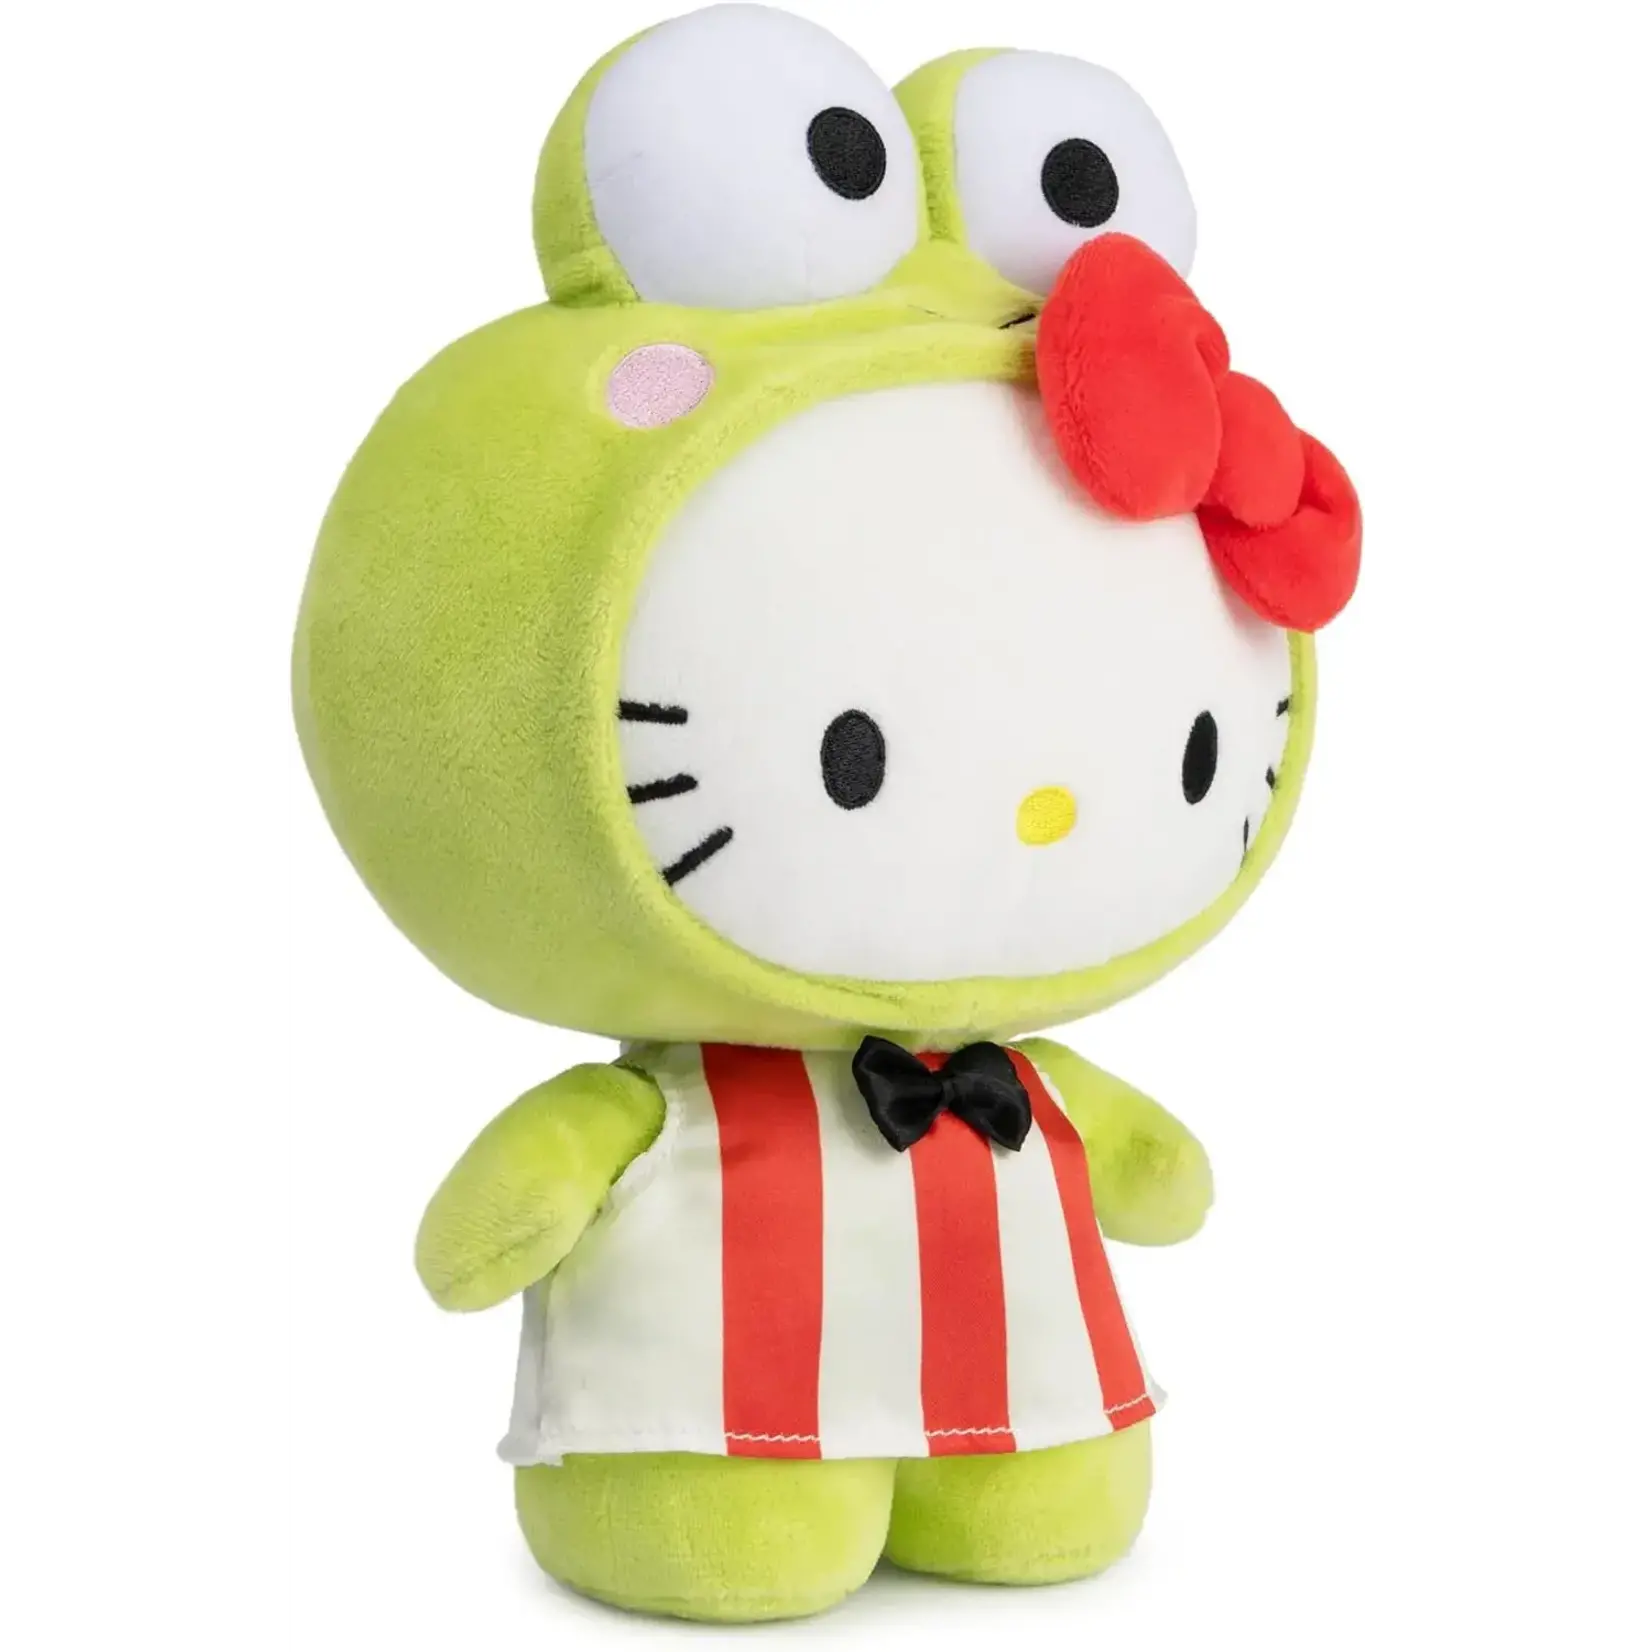 Hello Kitty Keroppi ™ Plush, 9.5 in - Gund